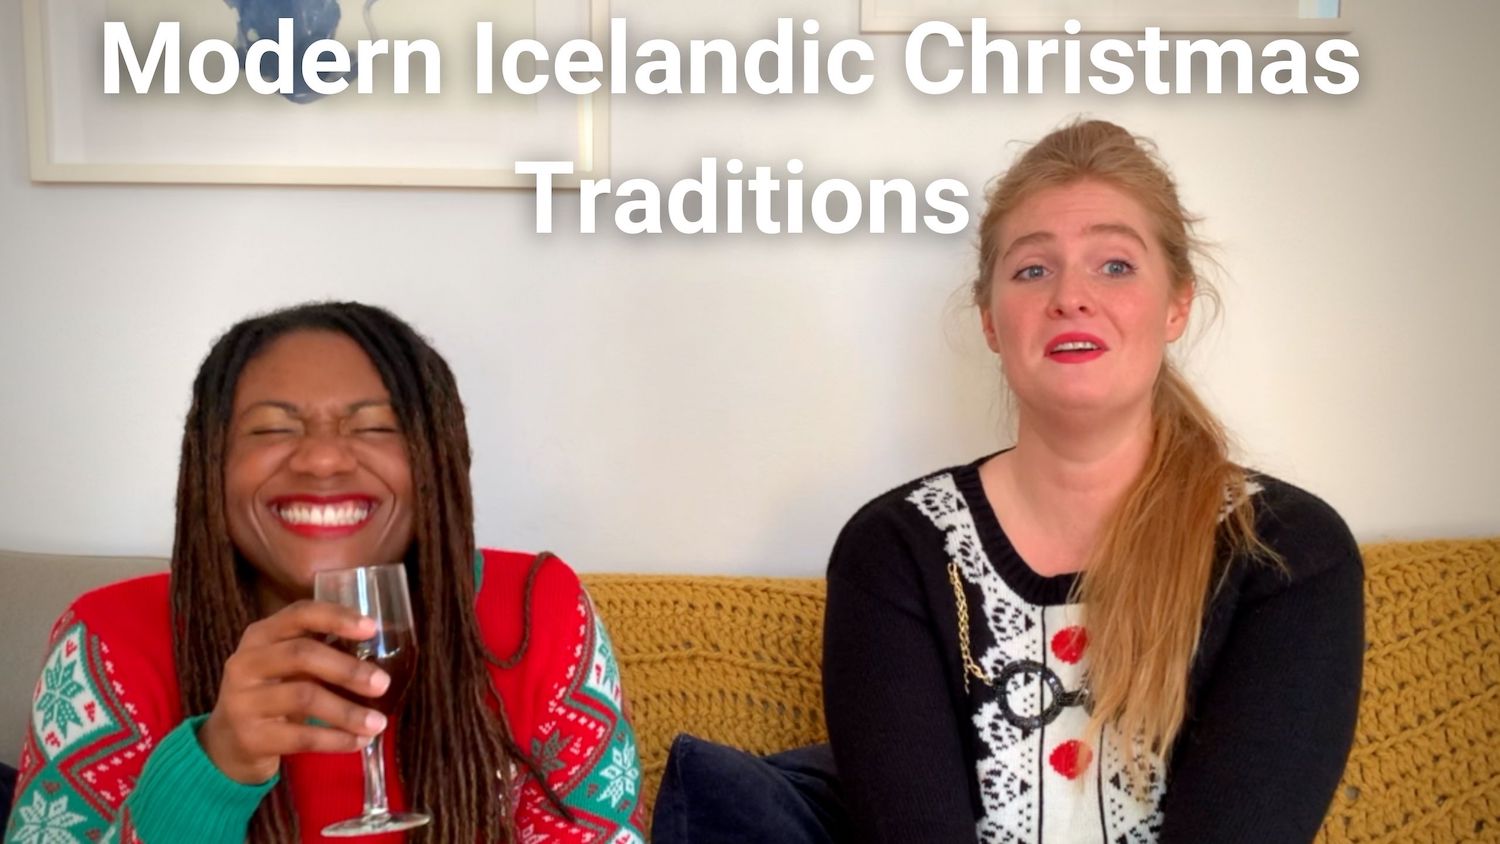 Modern Icelandic Christmas & New Year traditions with Íris Stefanía Skúladótir